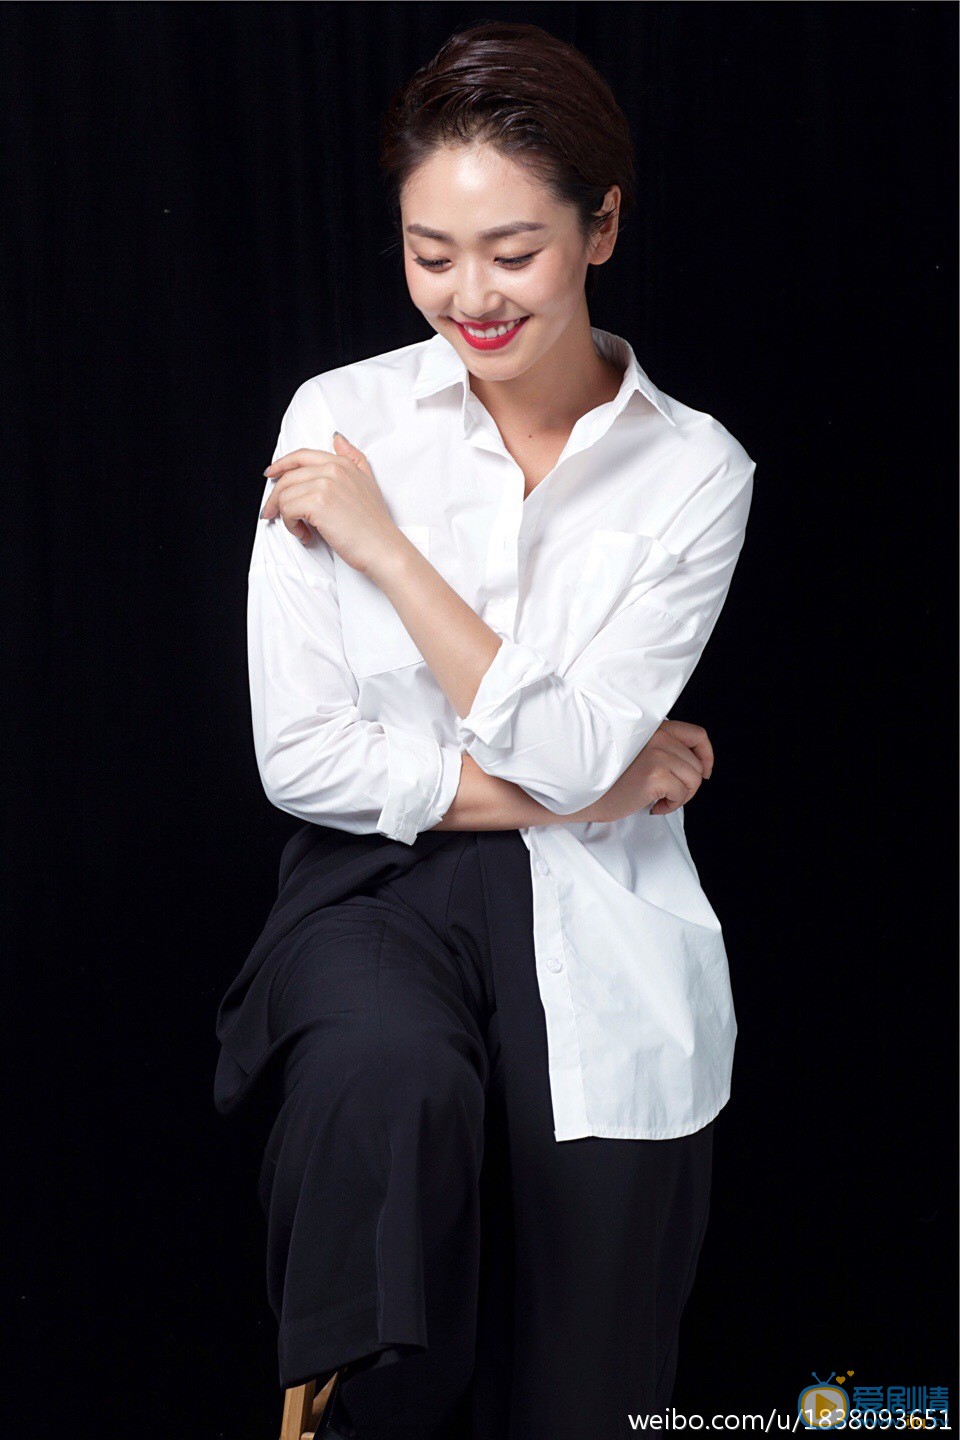 青年演员王思思曝光一组个性写真。写真中，王思思身着设计独特的白衬衫黑西裤，简约有型，气场十足。